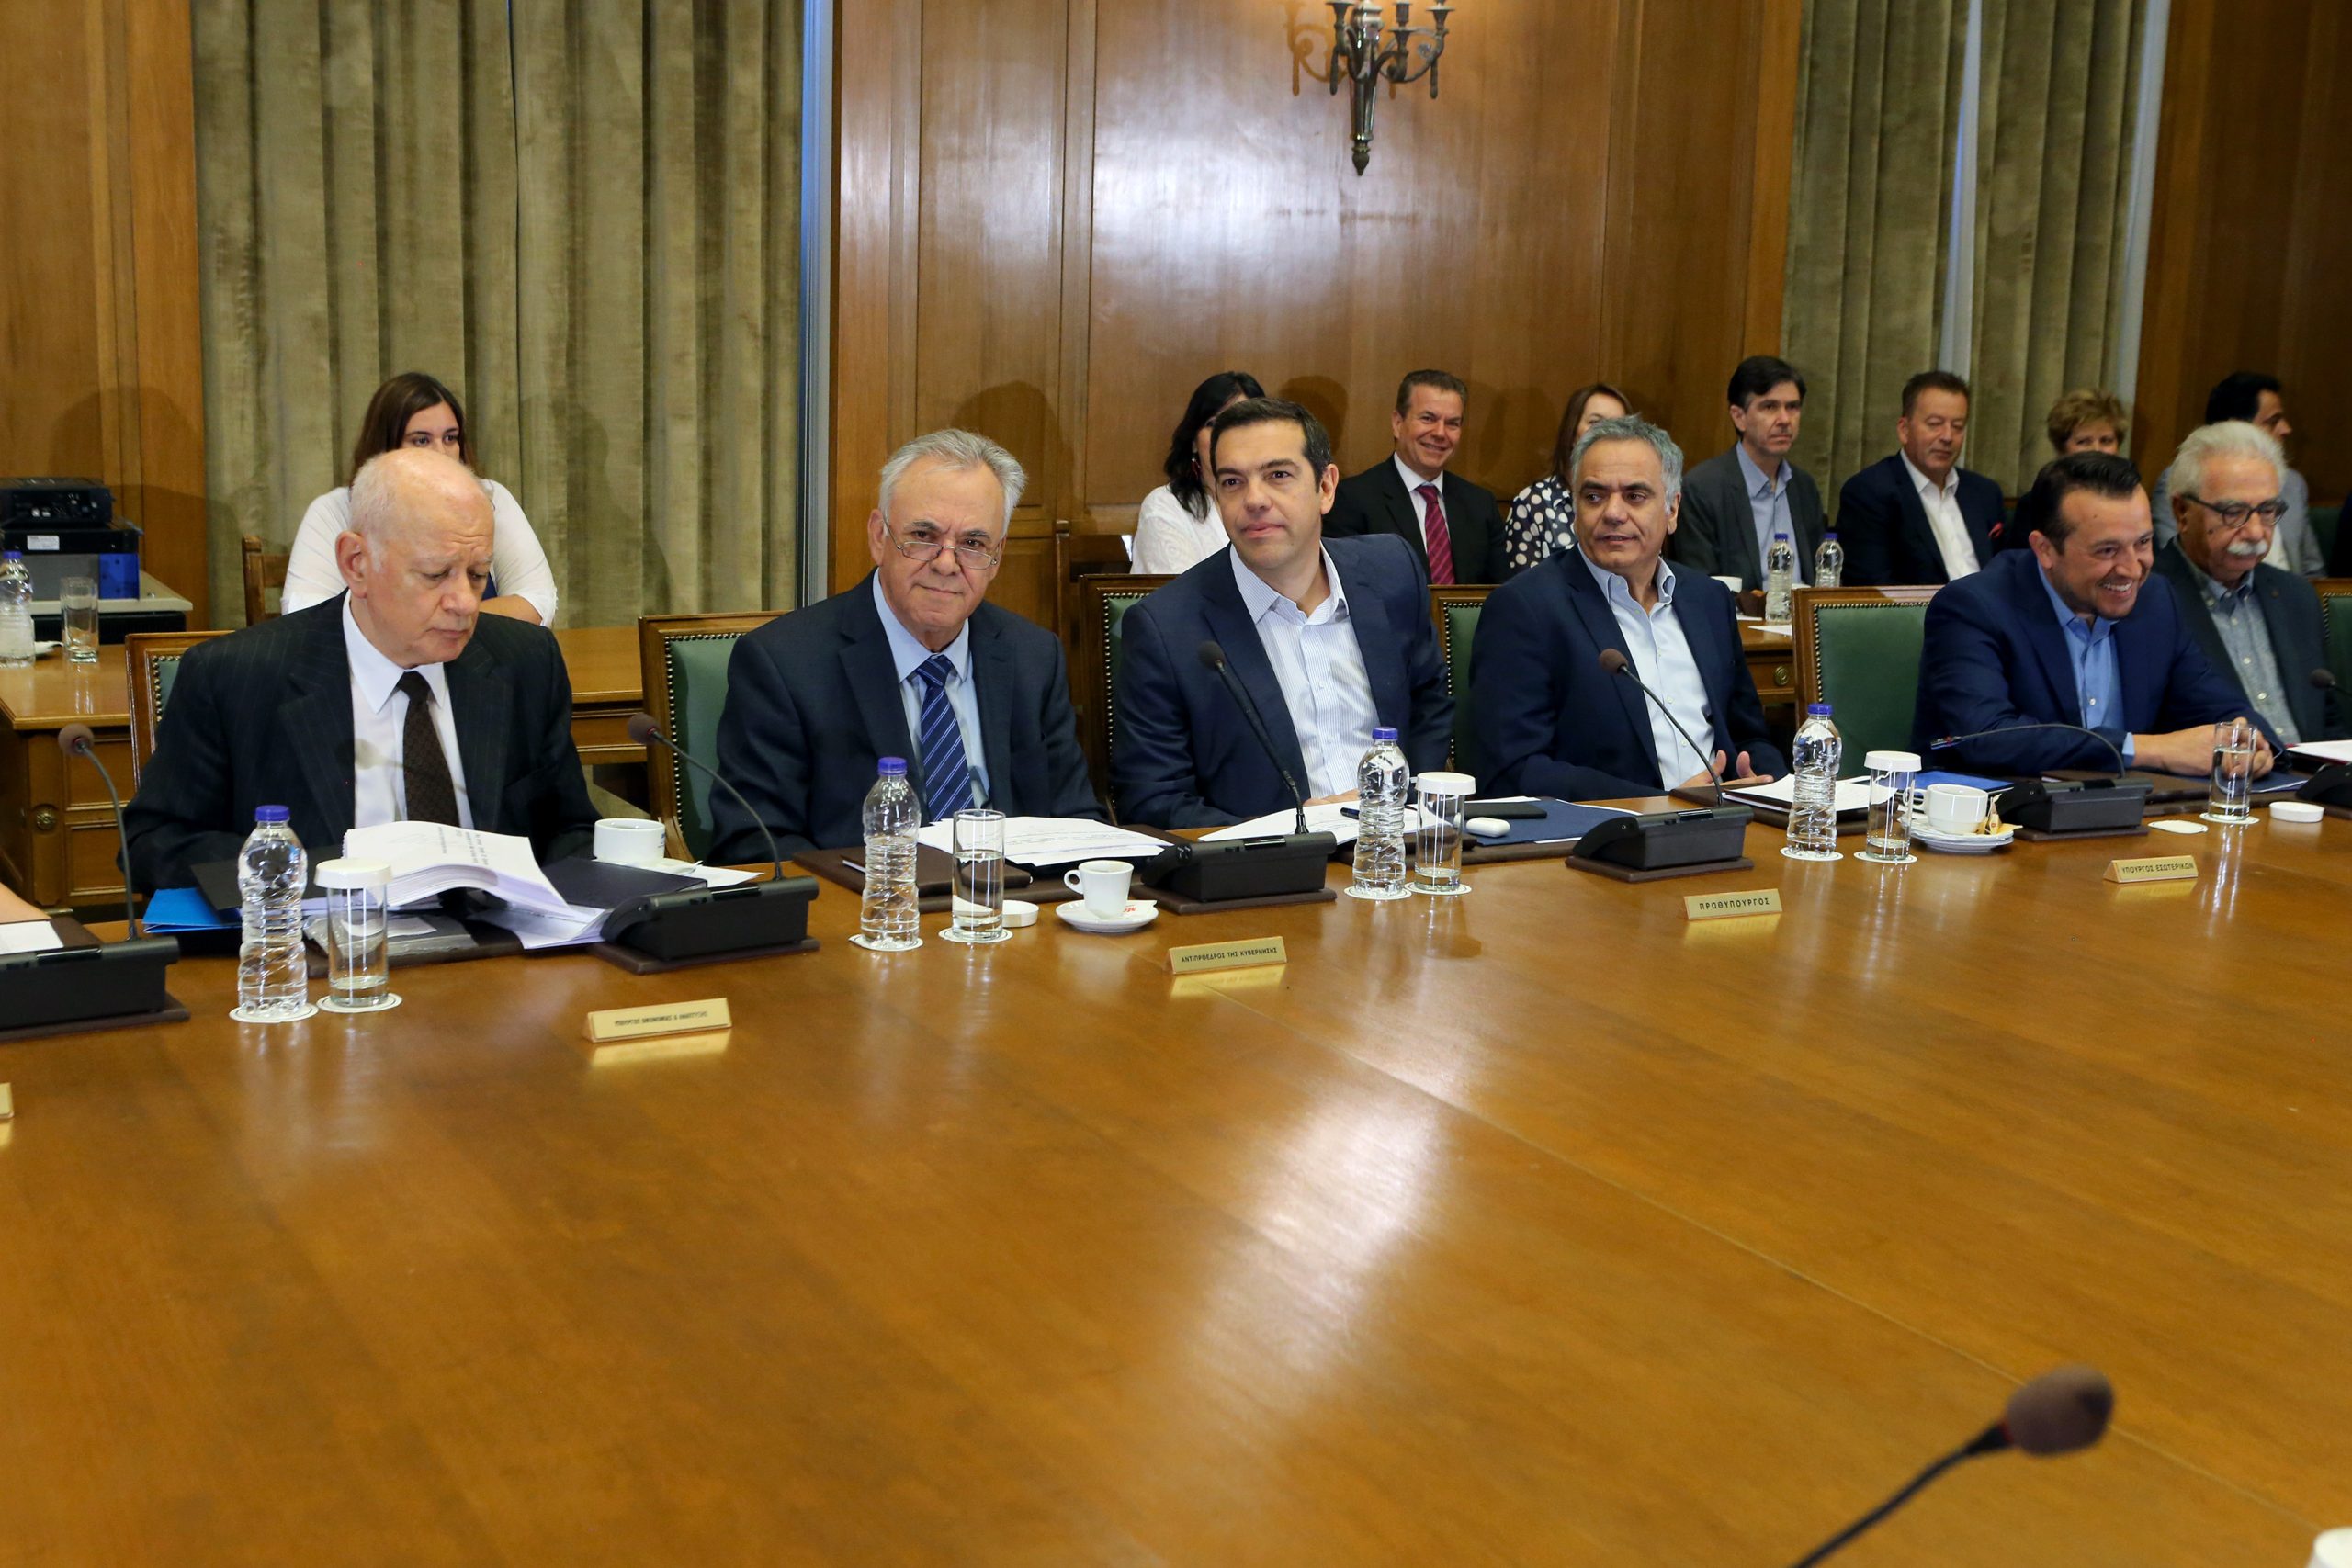 Υπουργικό συμβούλιο: Αυτή είναι η νέα ηγεσία του Αρείου Πάγου – Πέρασαν οι αλλαγές παρά τις αντιδράσεις της ΝΔ